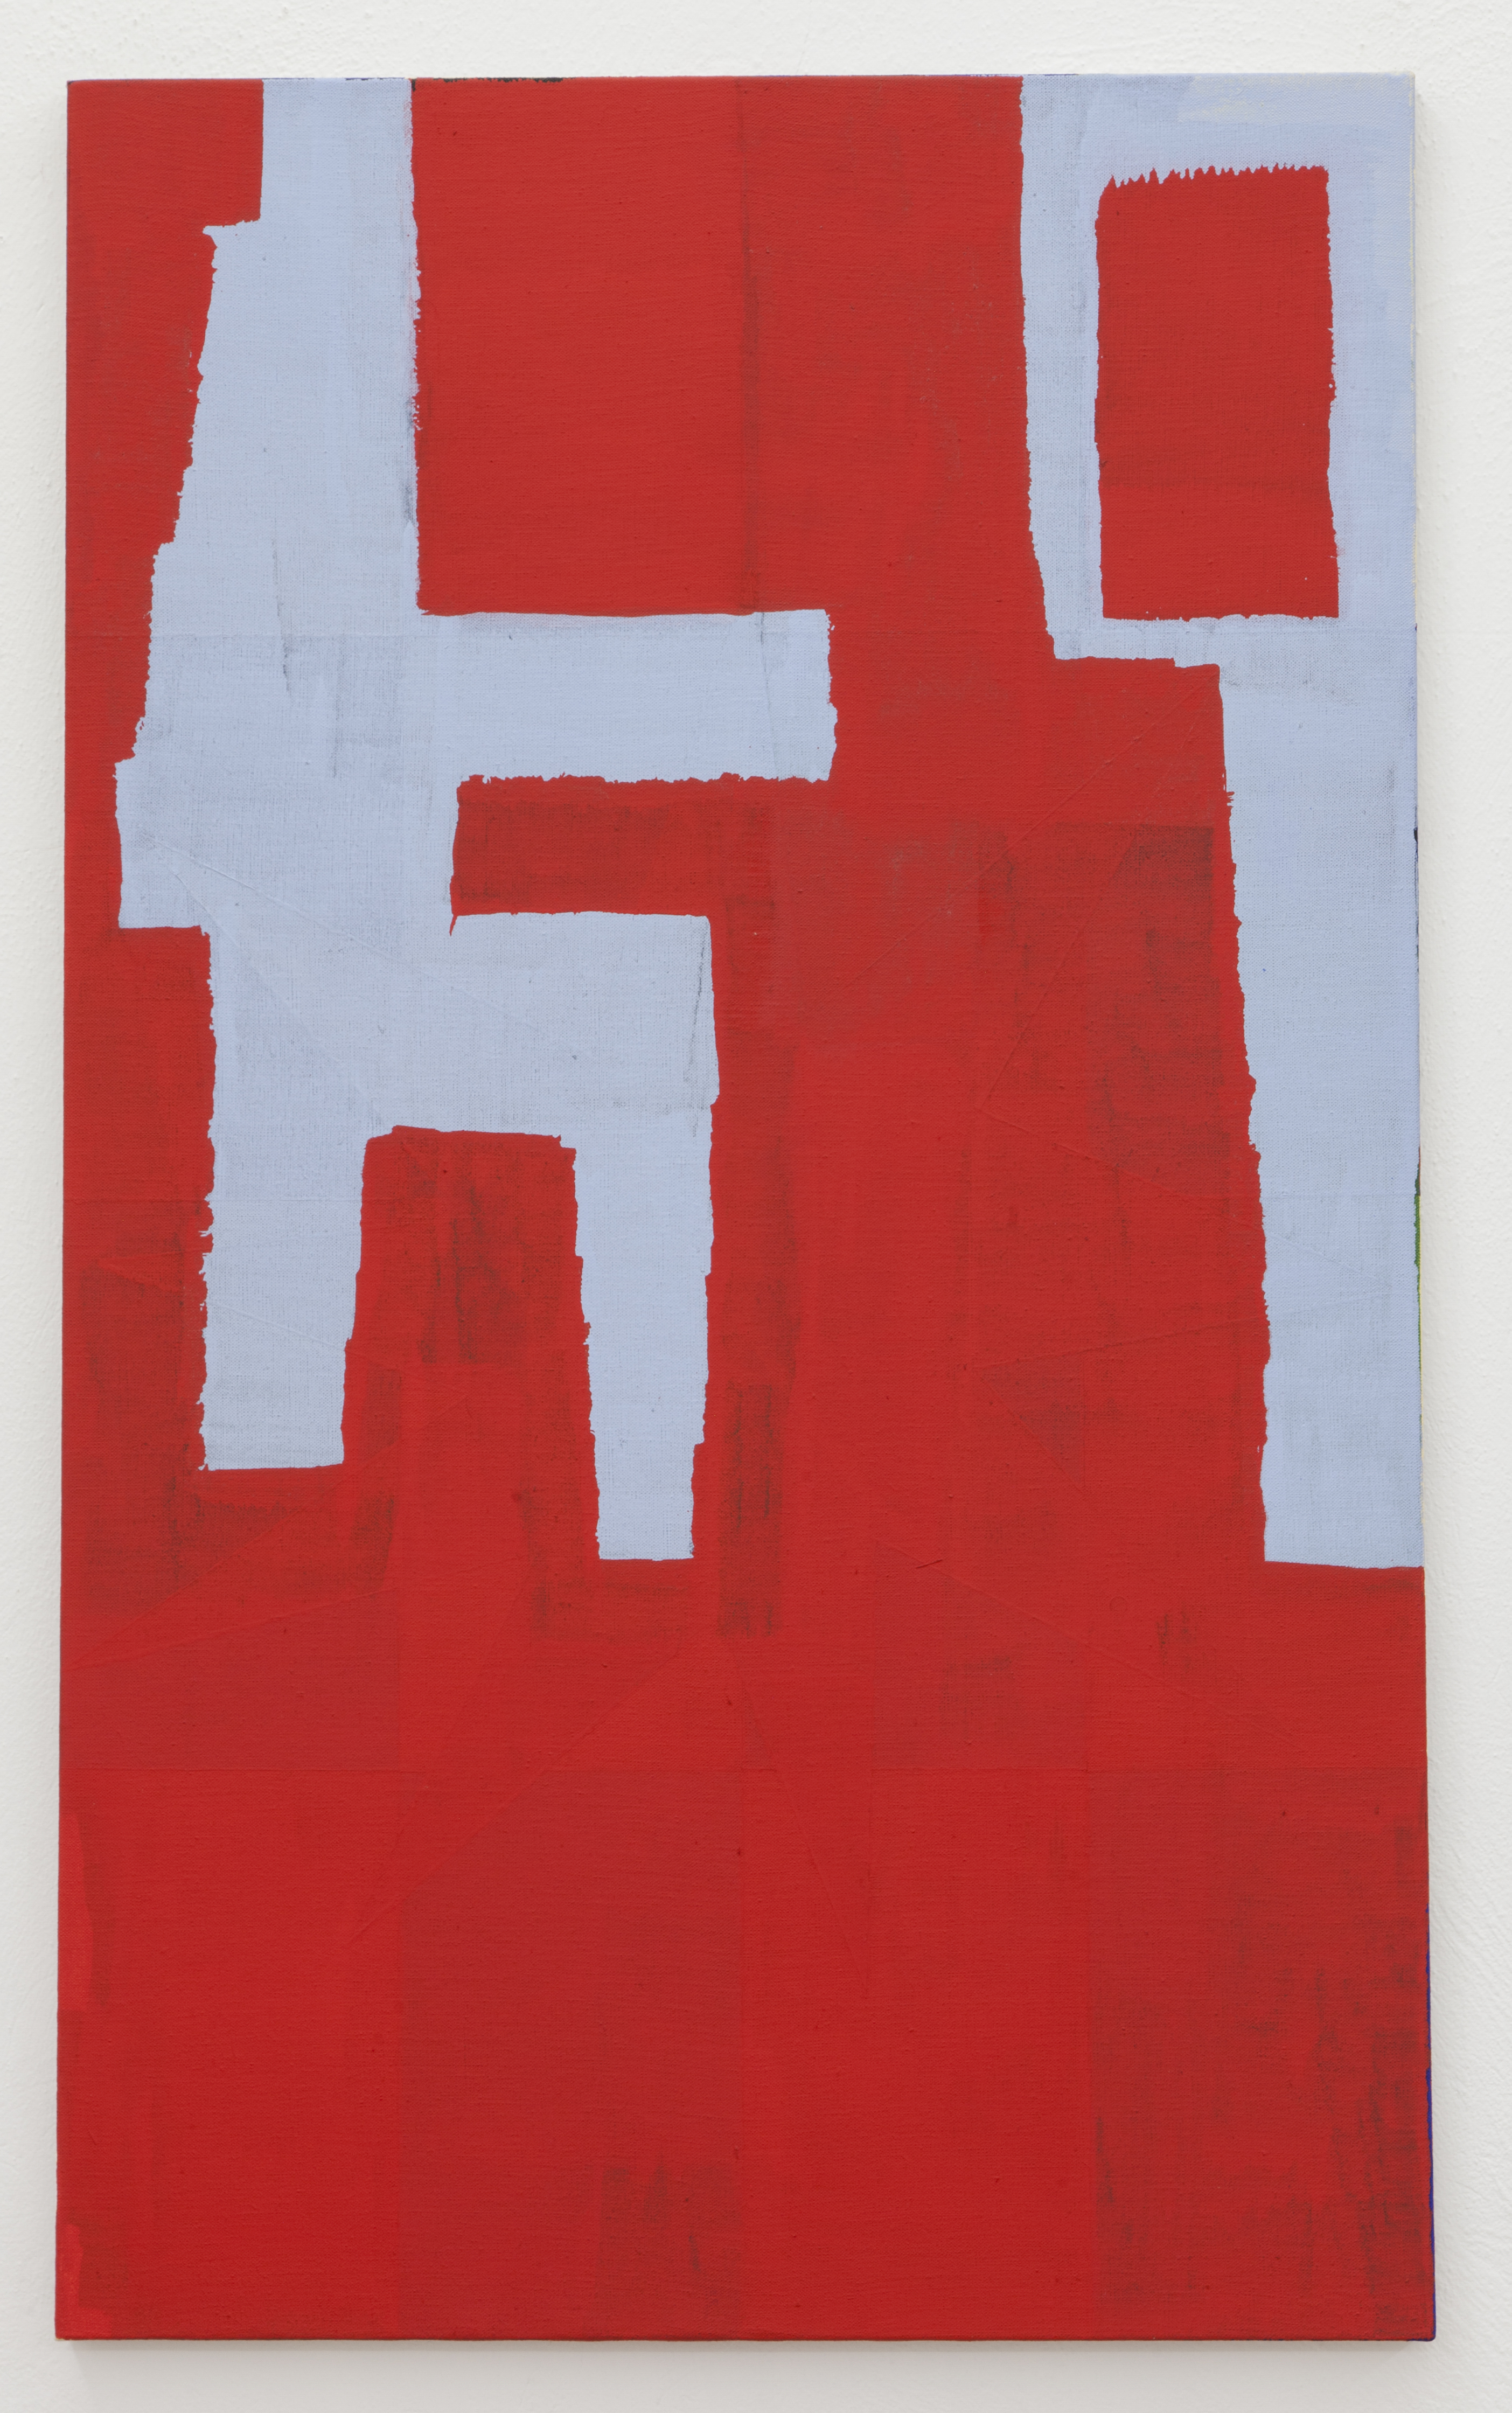 Joshua Abelow, House, 2020, Oil on linen, 40h x 24w x 0.75d in.